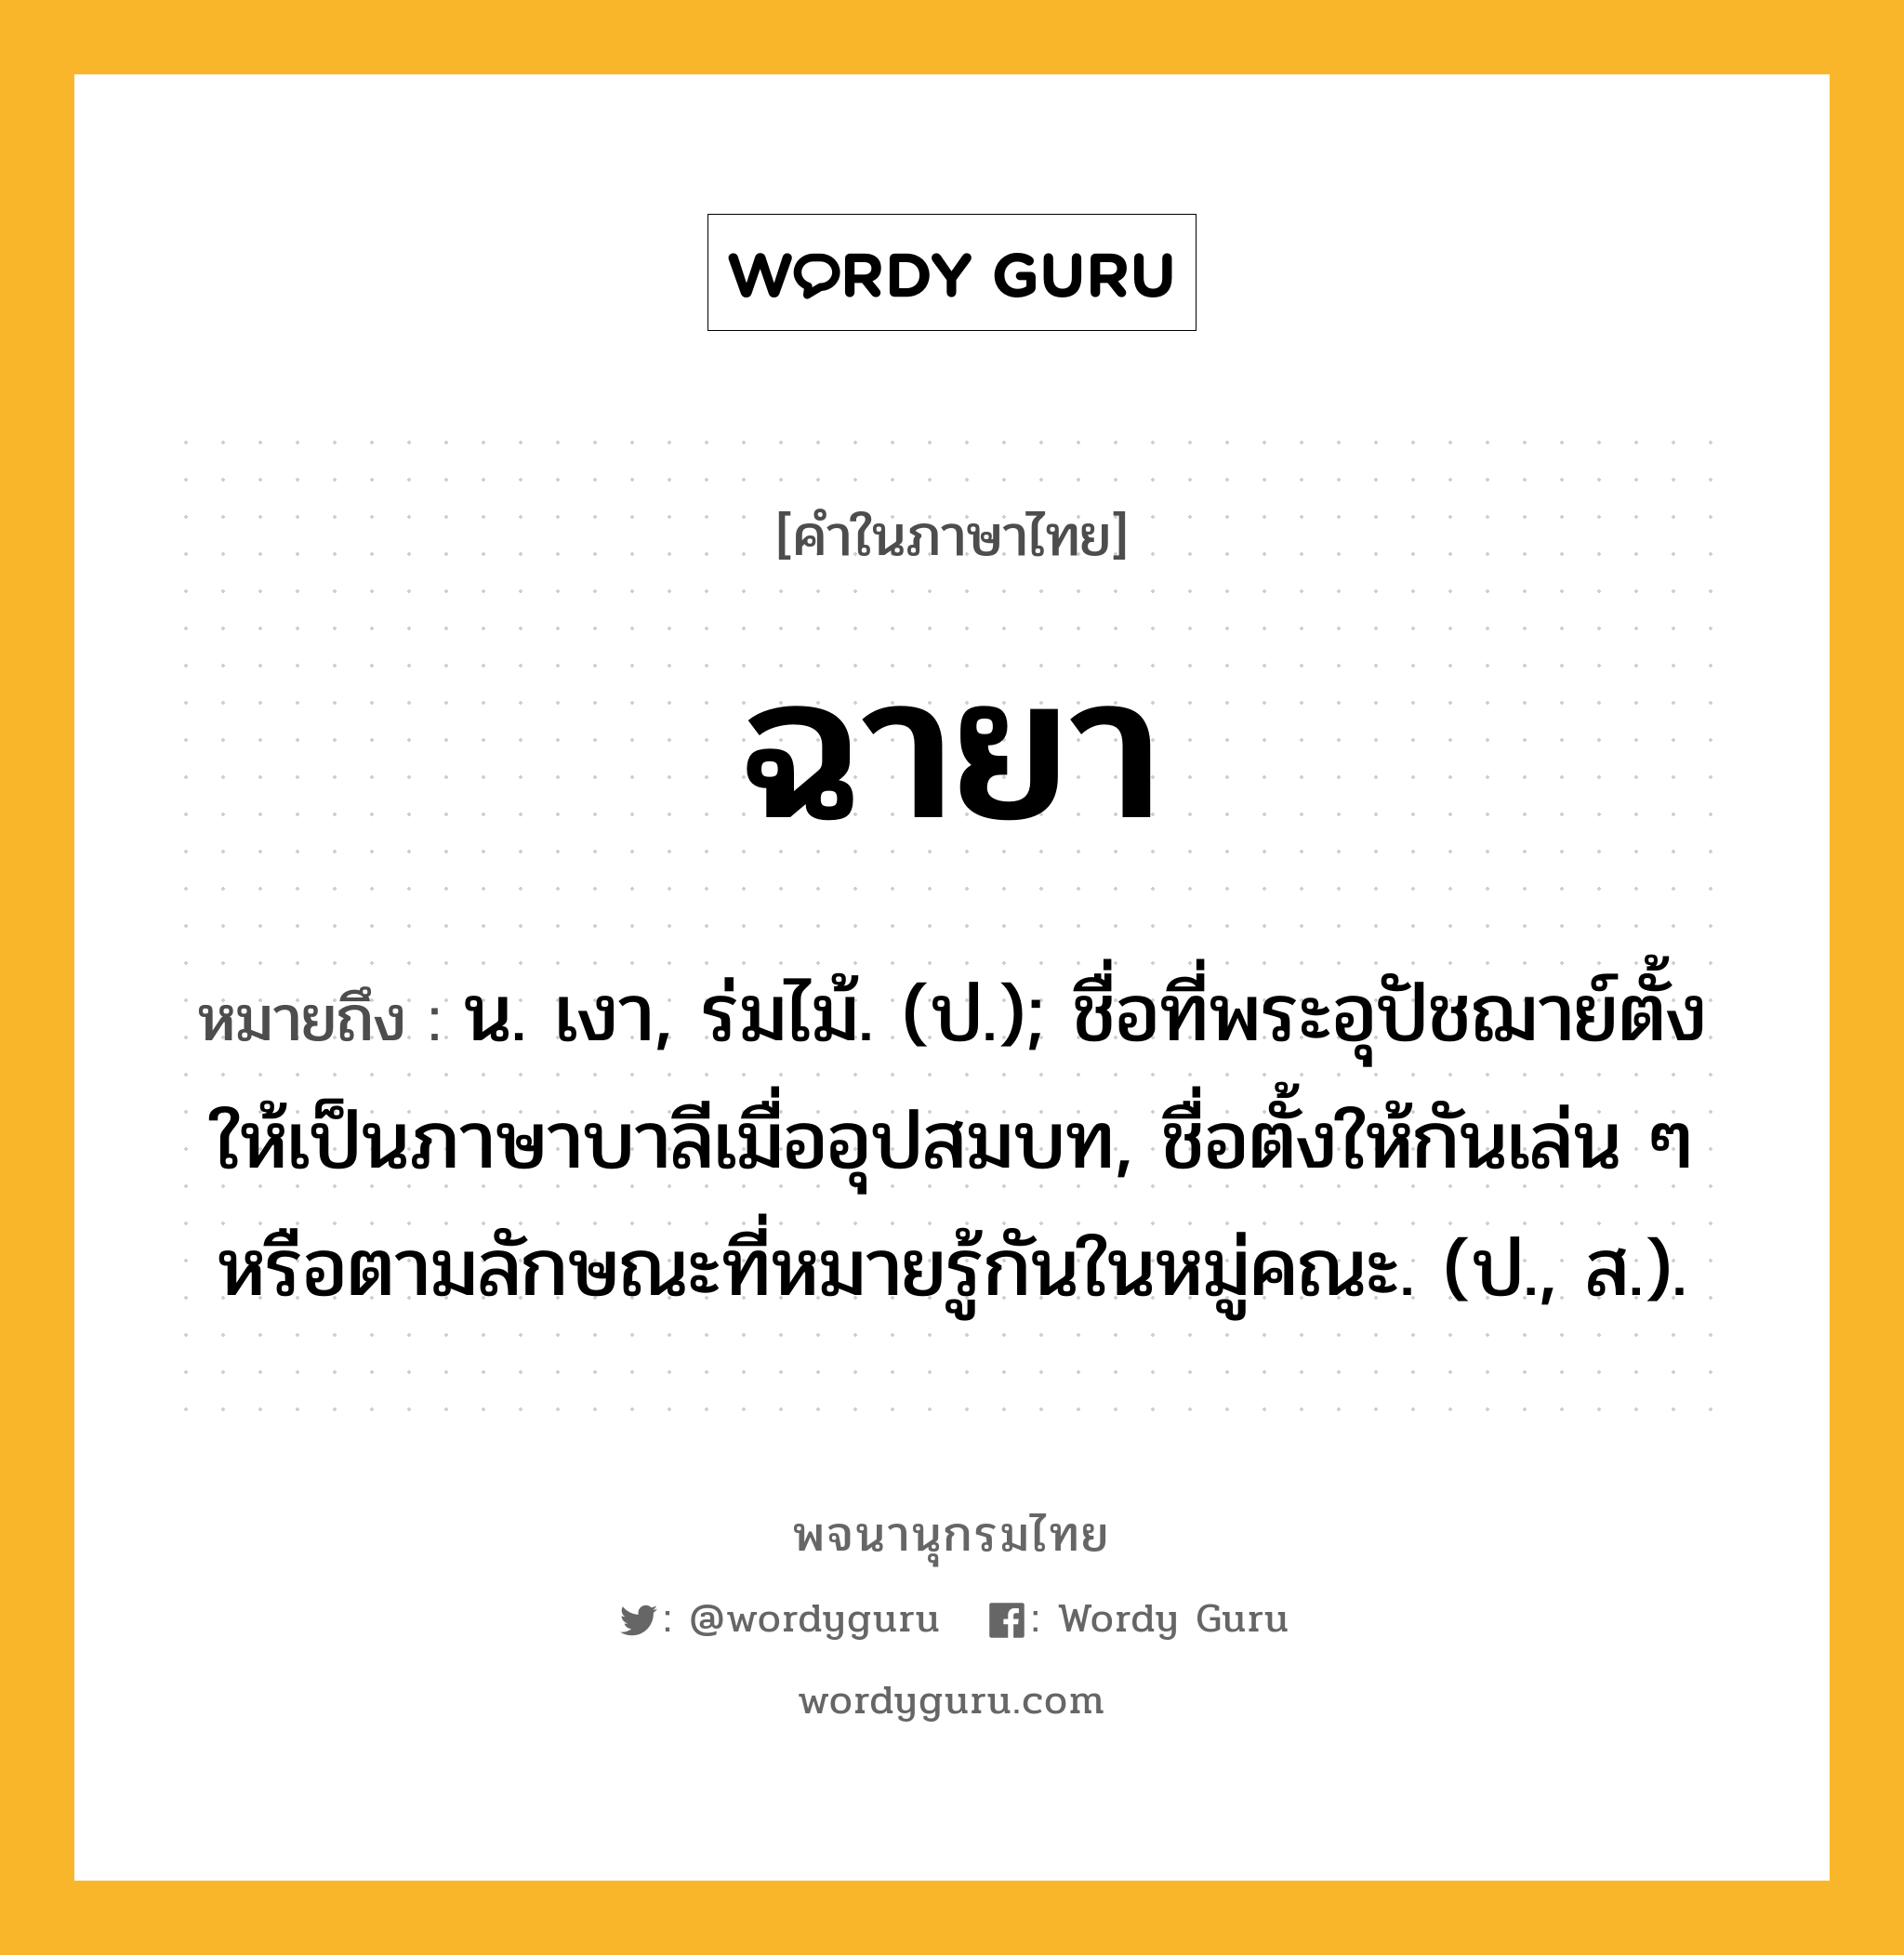 ฉายา ความหมาย หมายถึงอะไร?, คำในภาษาไทย ฉายา หมายถึง น. เงา, ร่มไม้. (ป.); ชื่อที่พระอุปัชฌาย์ตั้งให้เป็นภาษาบาลีเมื่ออุปสมบท, ชื่อตั้งให้กันเล่น ๆ หรือตามลักษณะที่หมายรู้กันในหมู่คณะ. (ป., ส.).